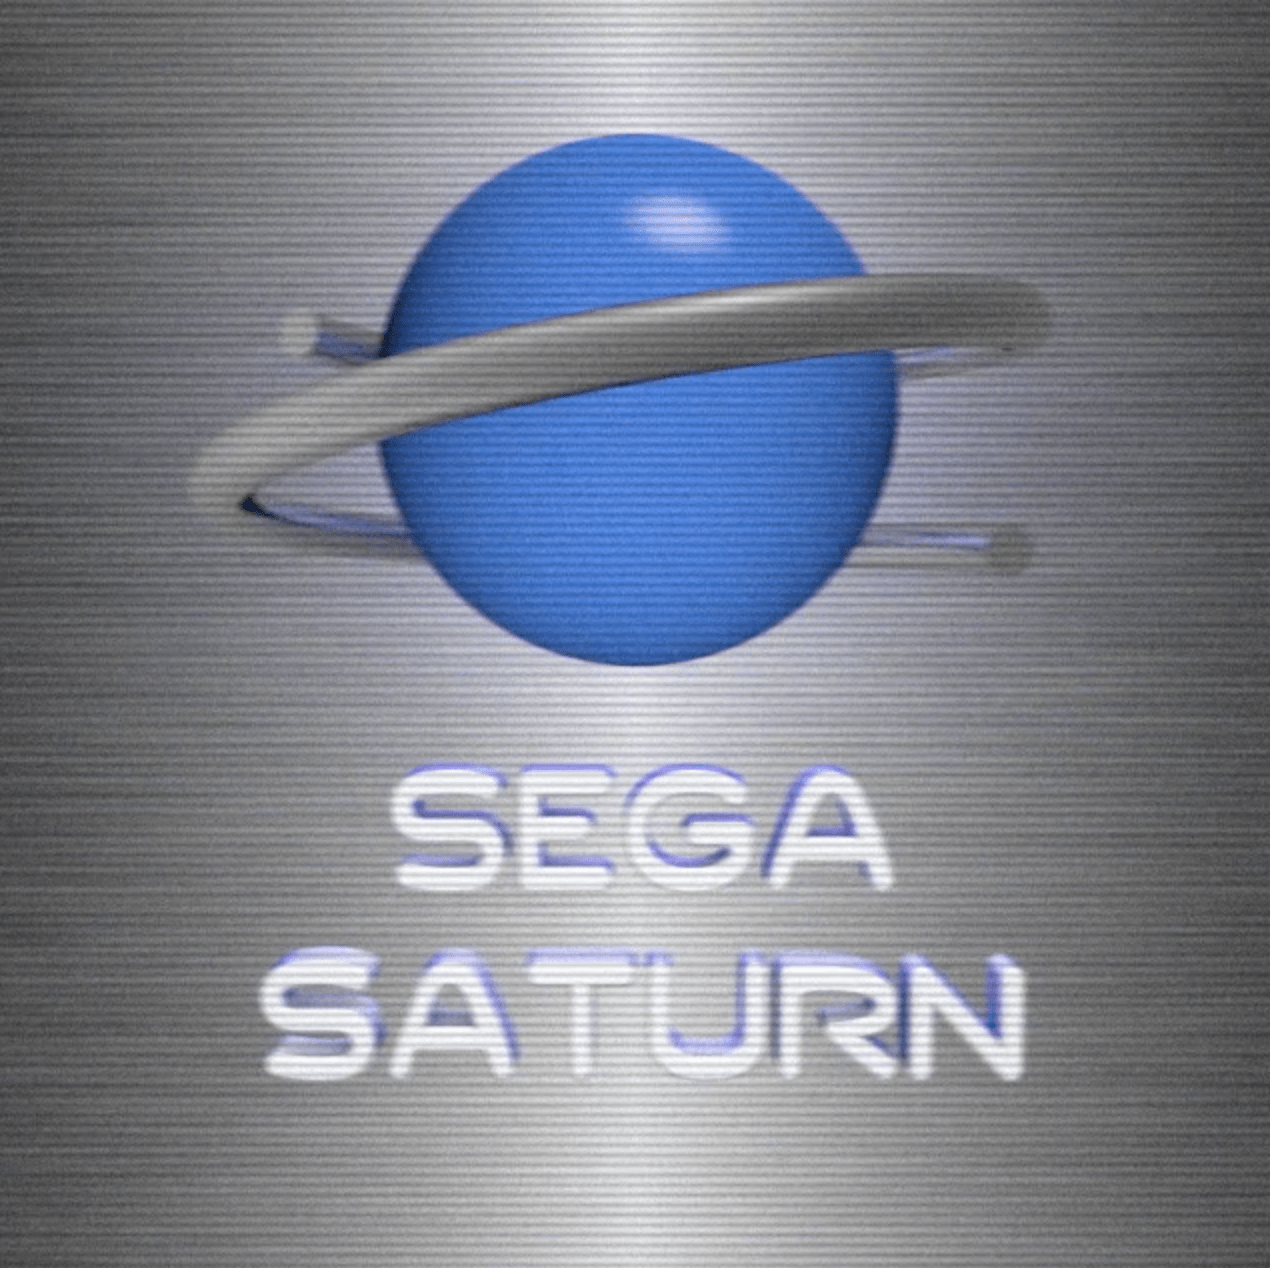 Sega Saturn Logo - Sega Saturn Boot Intro — Render Artist